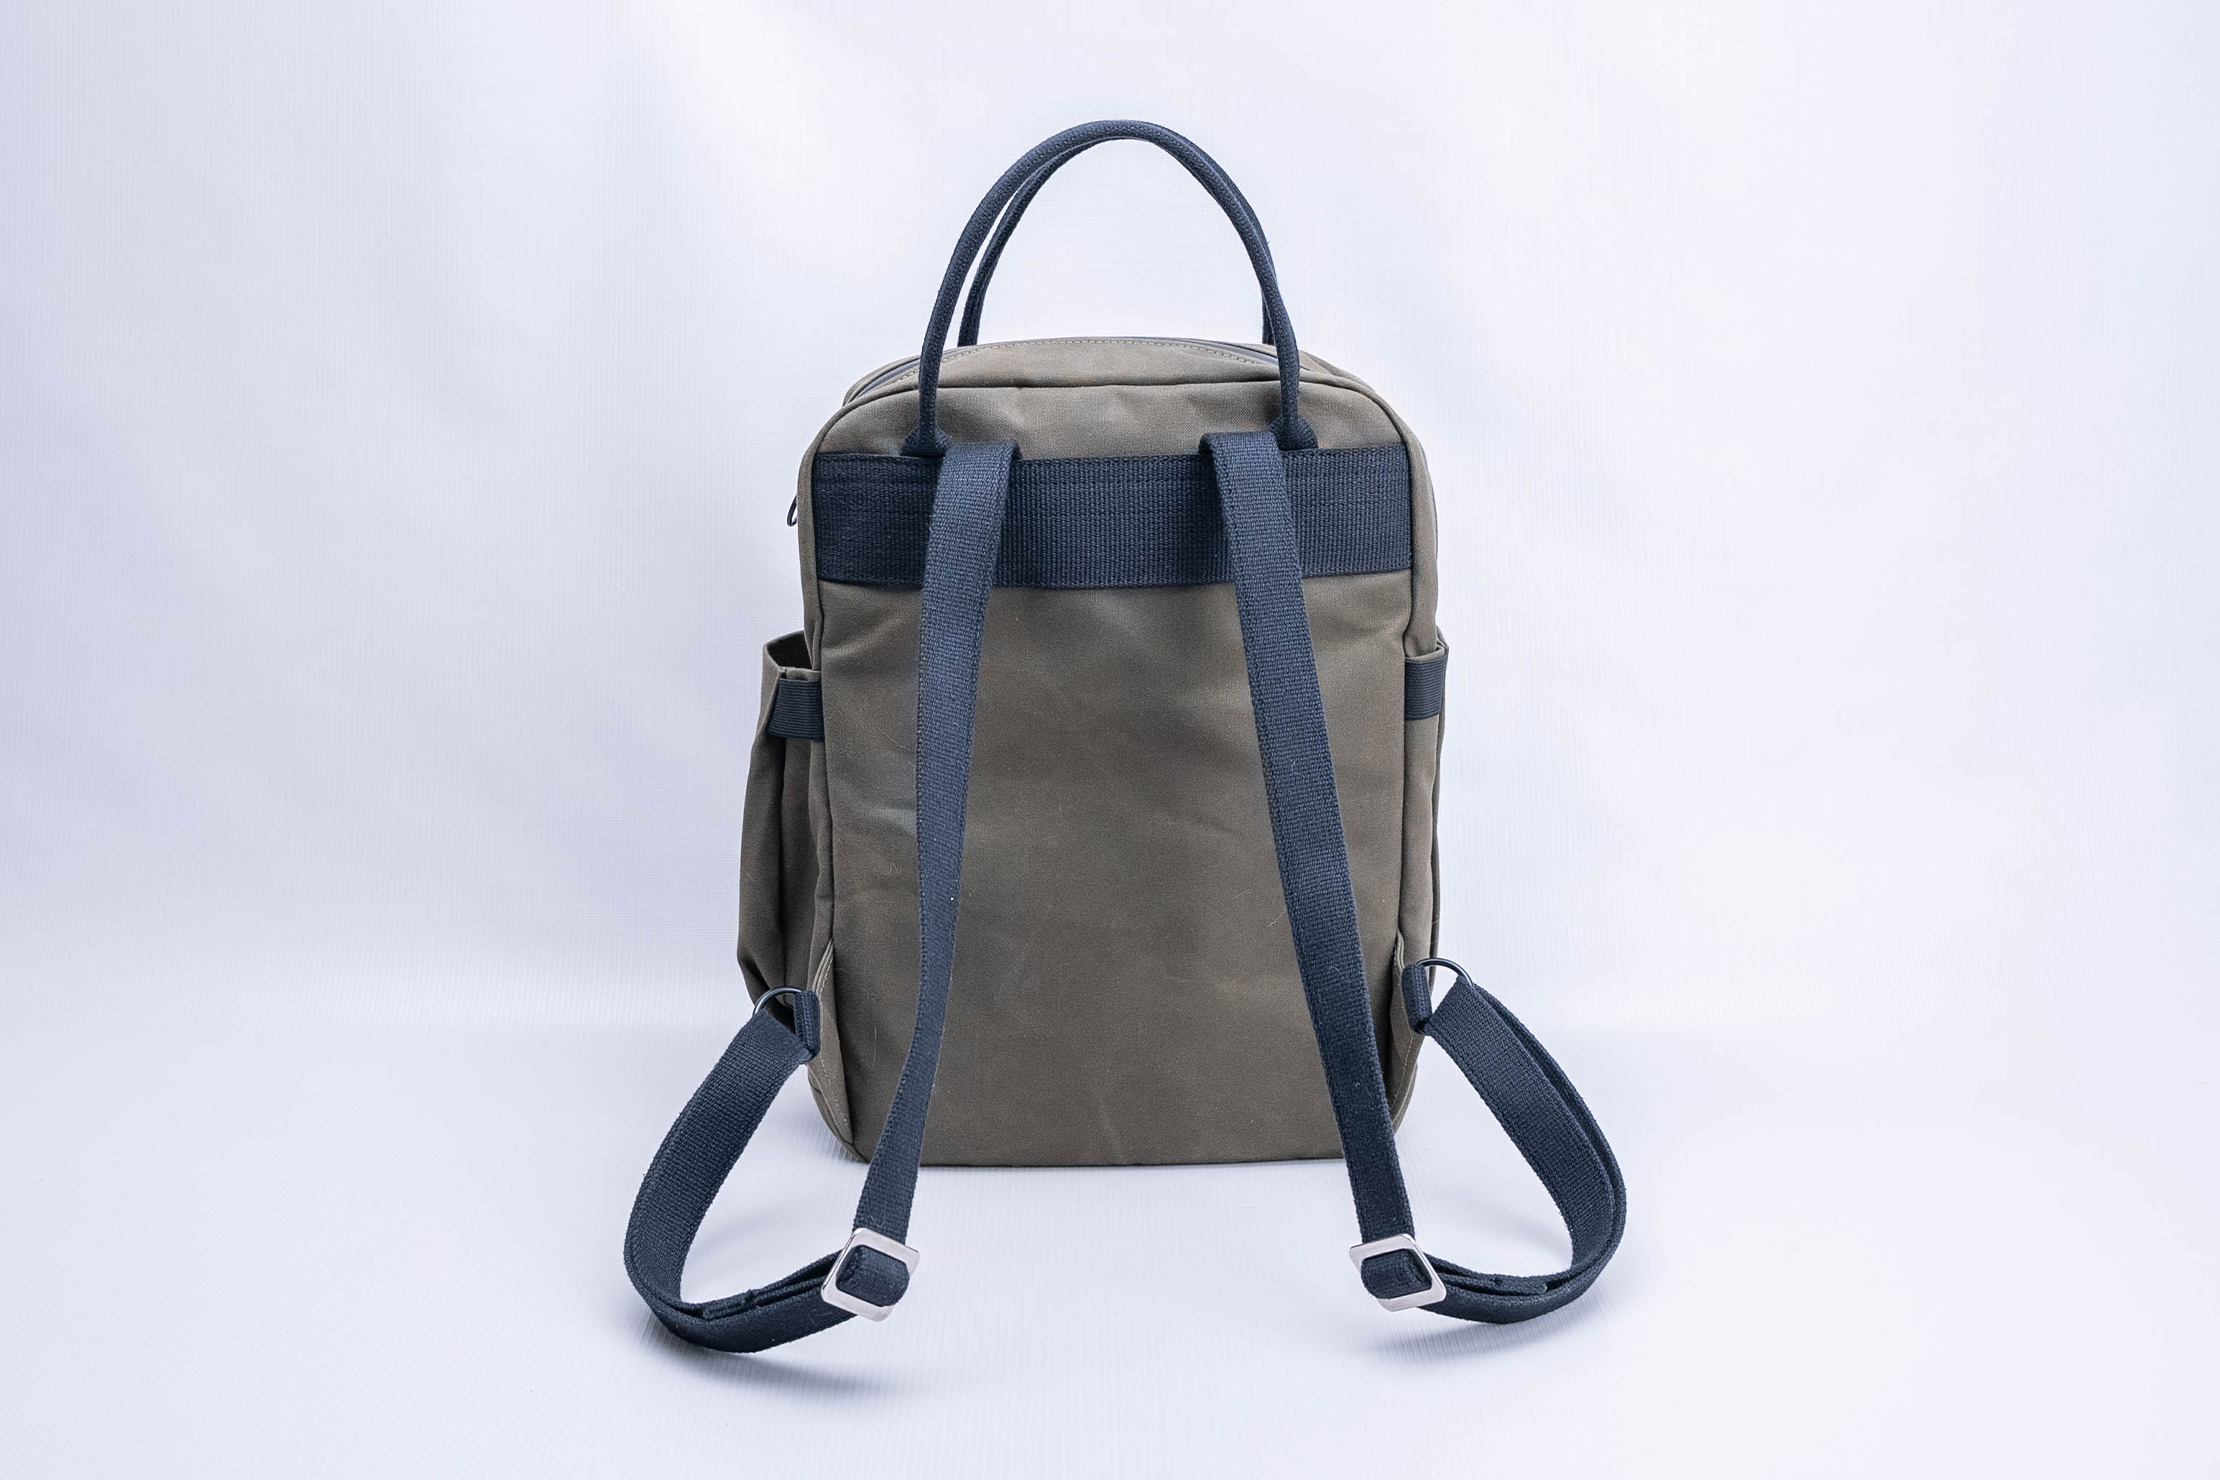 Trakke Canna Backpack (V2) Harness System